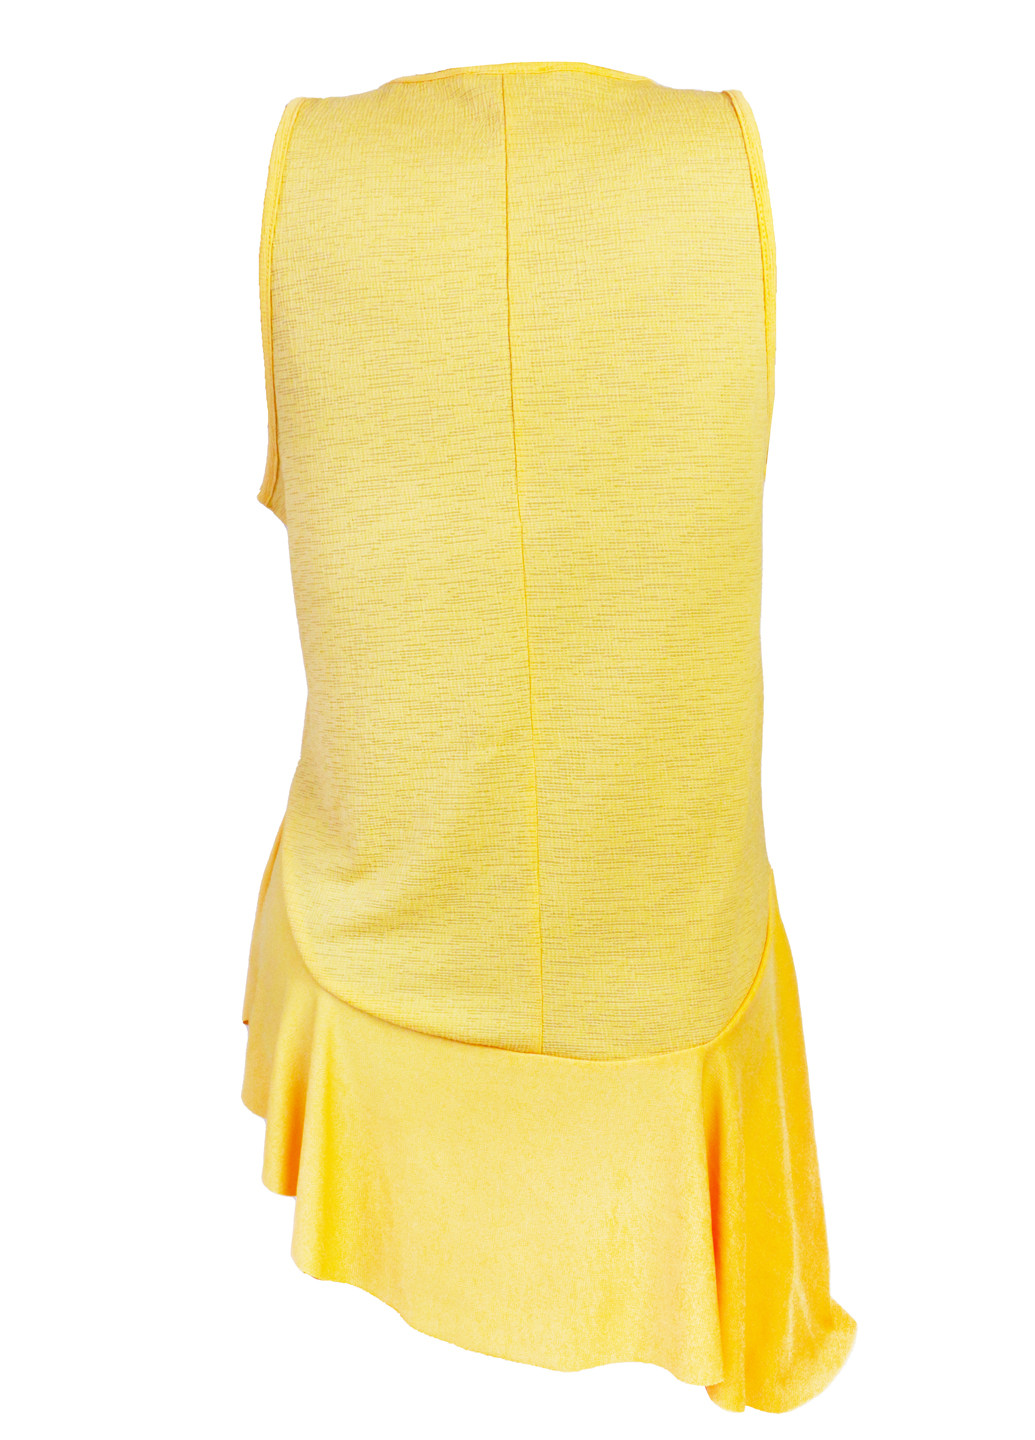 Желтая летняя женская блуза с баской s 42 жёлтый Zara